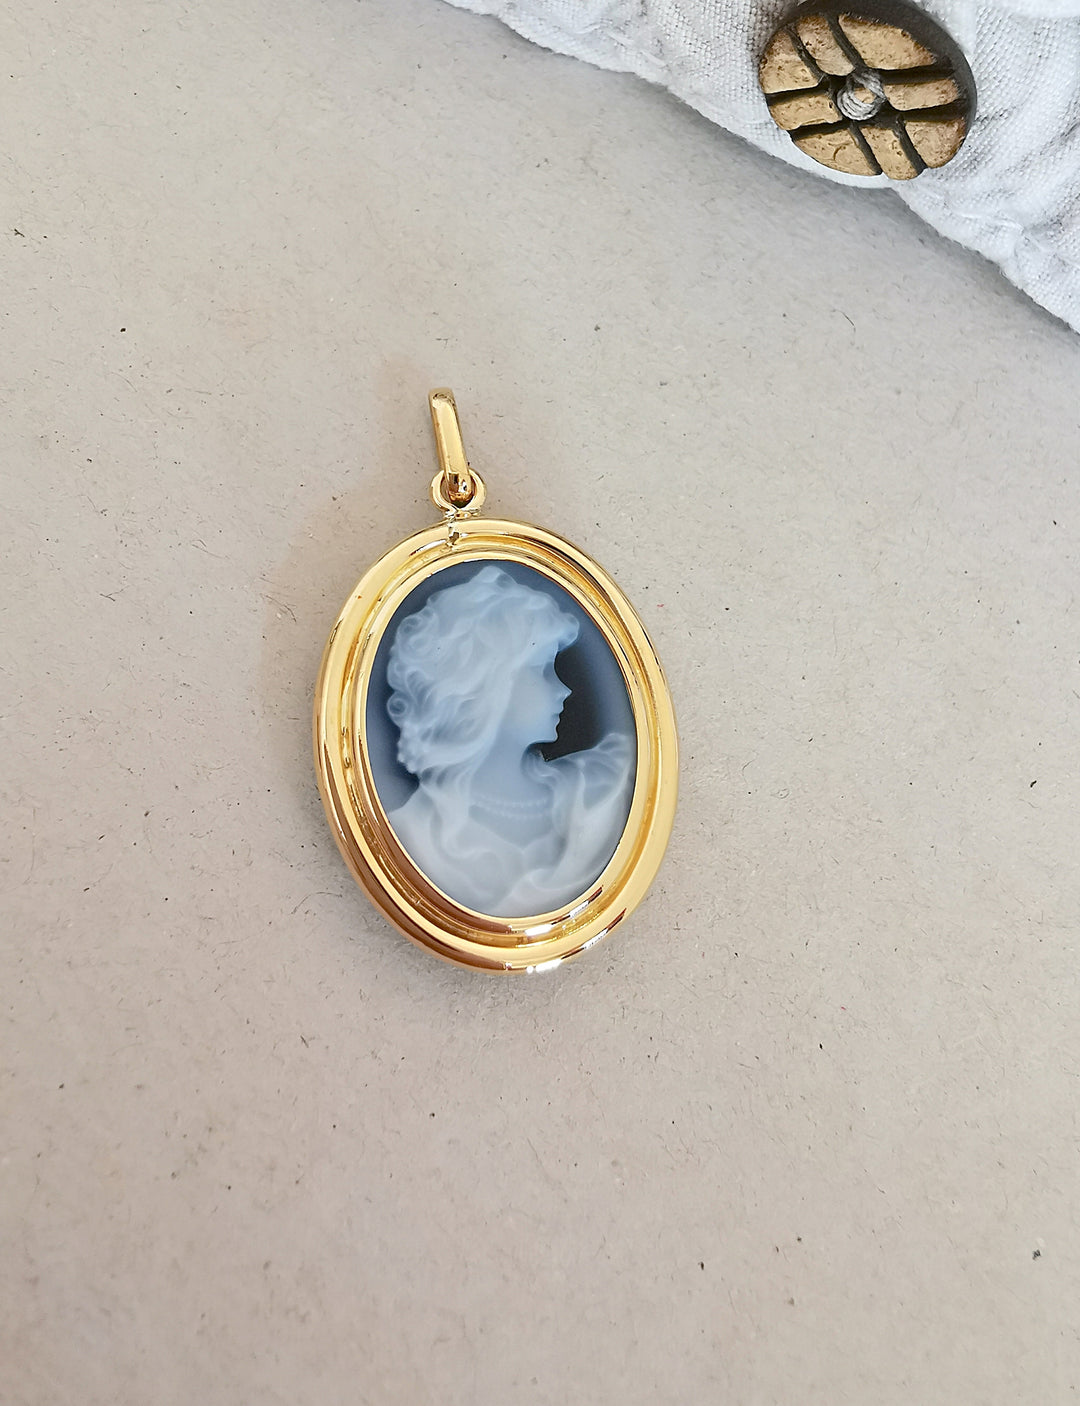 Pendentif Or 18 K / Camée agate bleue sur Onyx / 18 carats / 750/1000